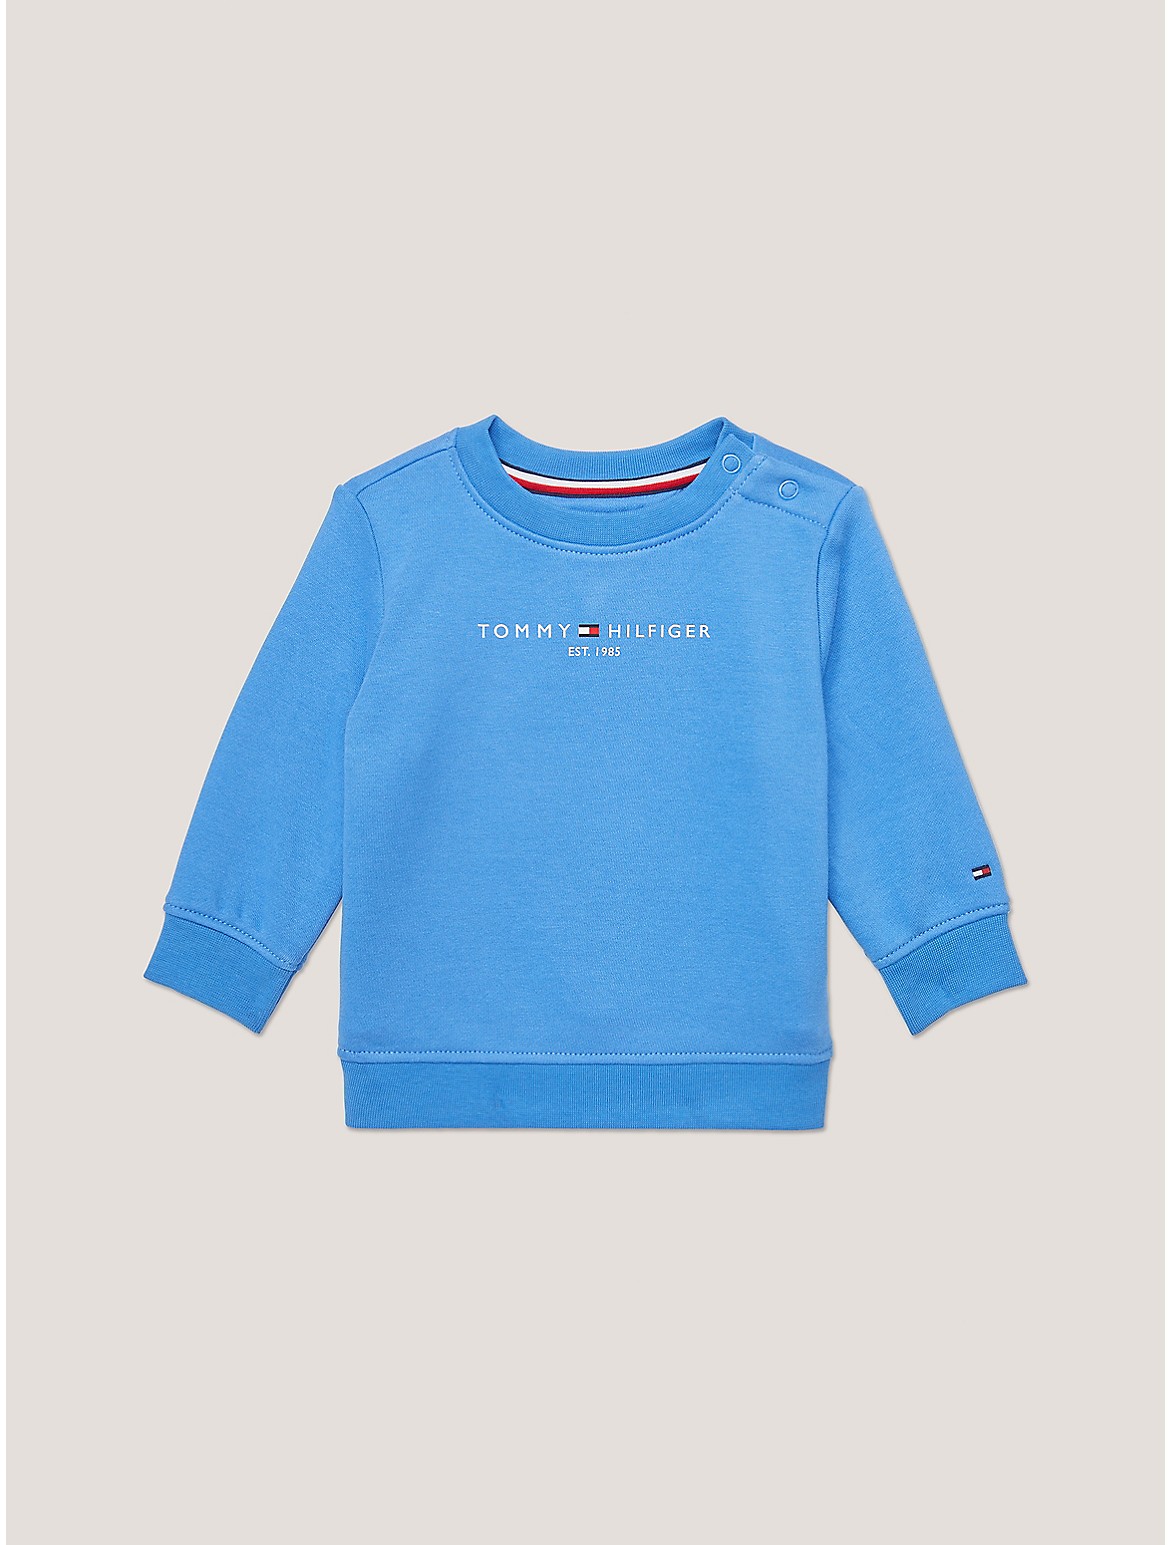 Tommy Hilfiger Boys' Babies' Tommy Logo Sweatshirt - Blue - 24M